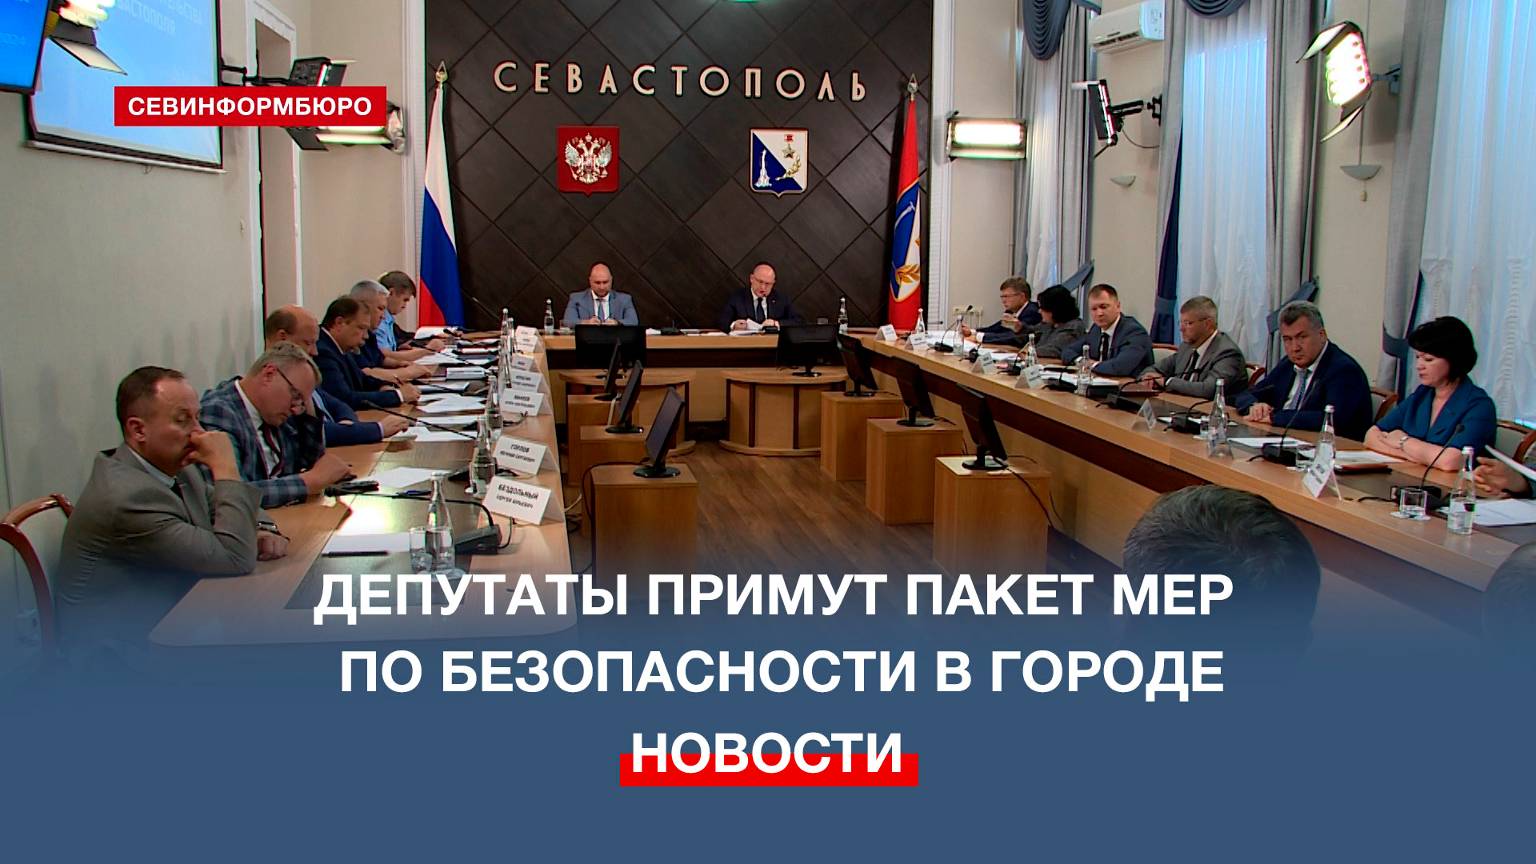 27 июня в Заксобрании Севастополя примут новый пакет мер обеспечения безопасности в городе